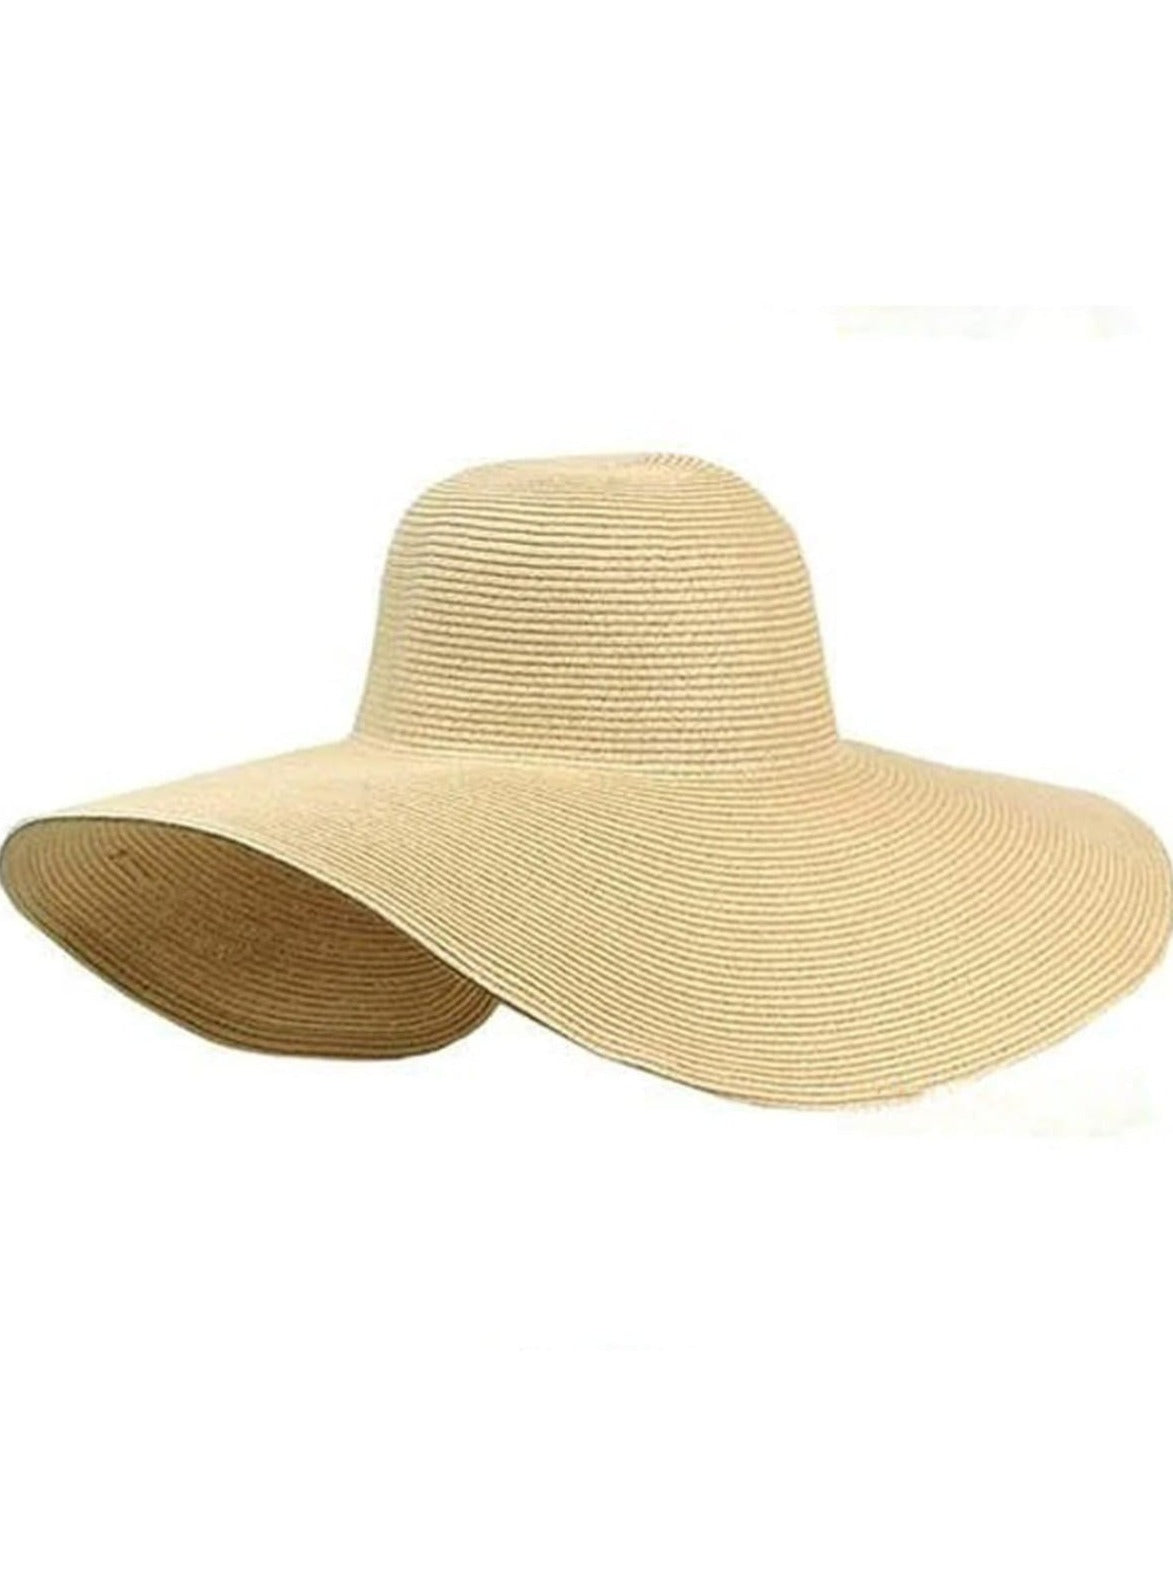 Womens Summer Wide Brim Oversized Straw Hat - Womens Accessories